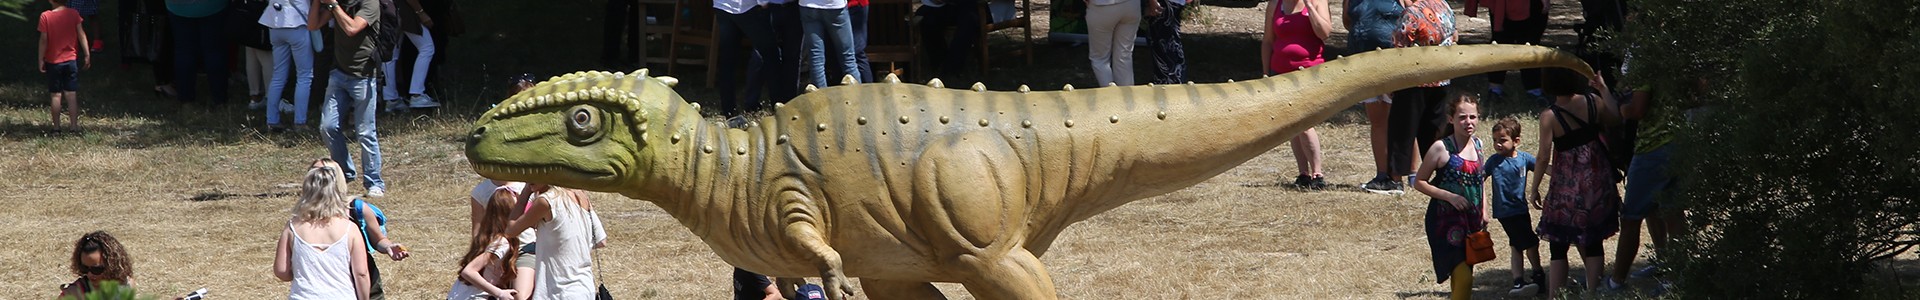 Dinosaur'Istres, le monde perdu renaît à Istres